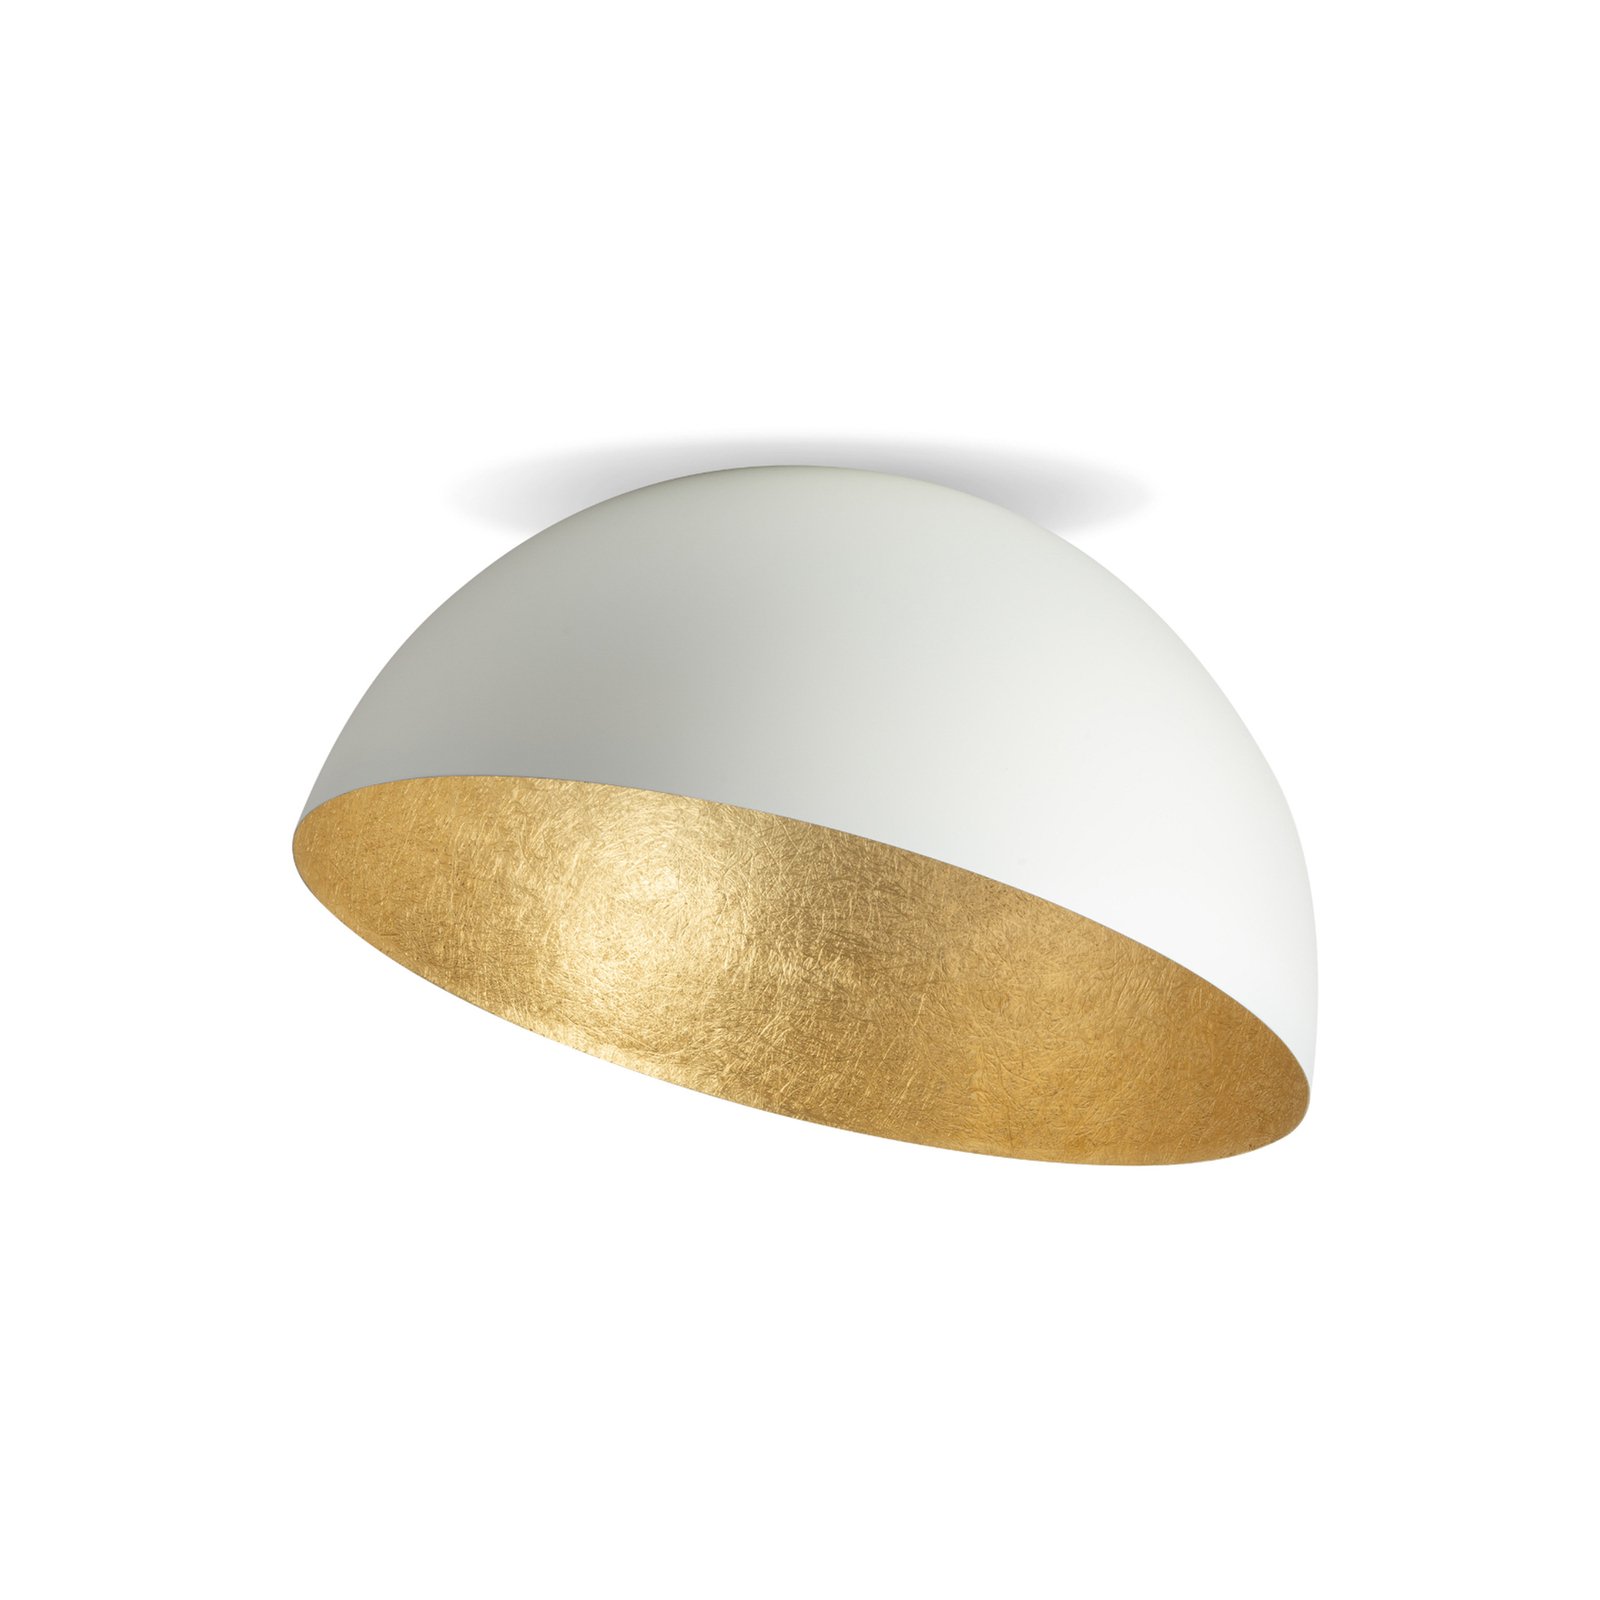 Lampa sufitowa Sfera, Ø 50cm, biała/złota